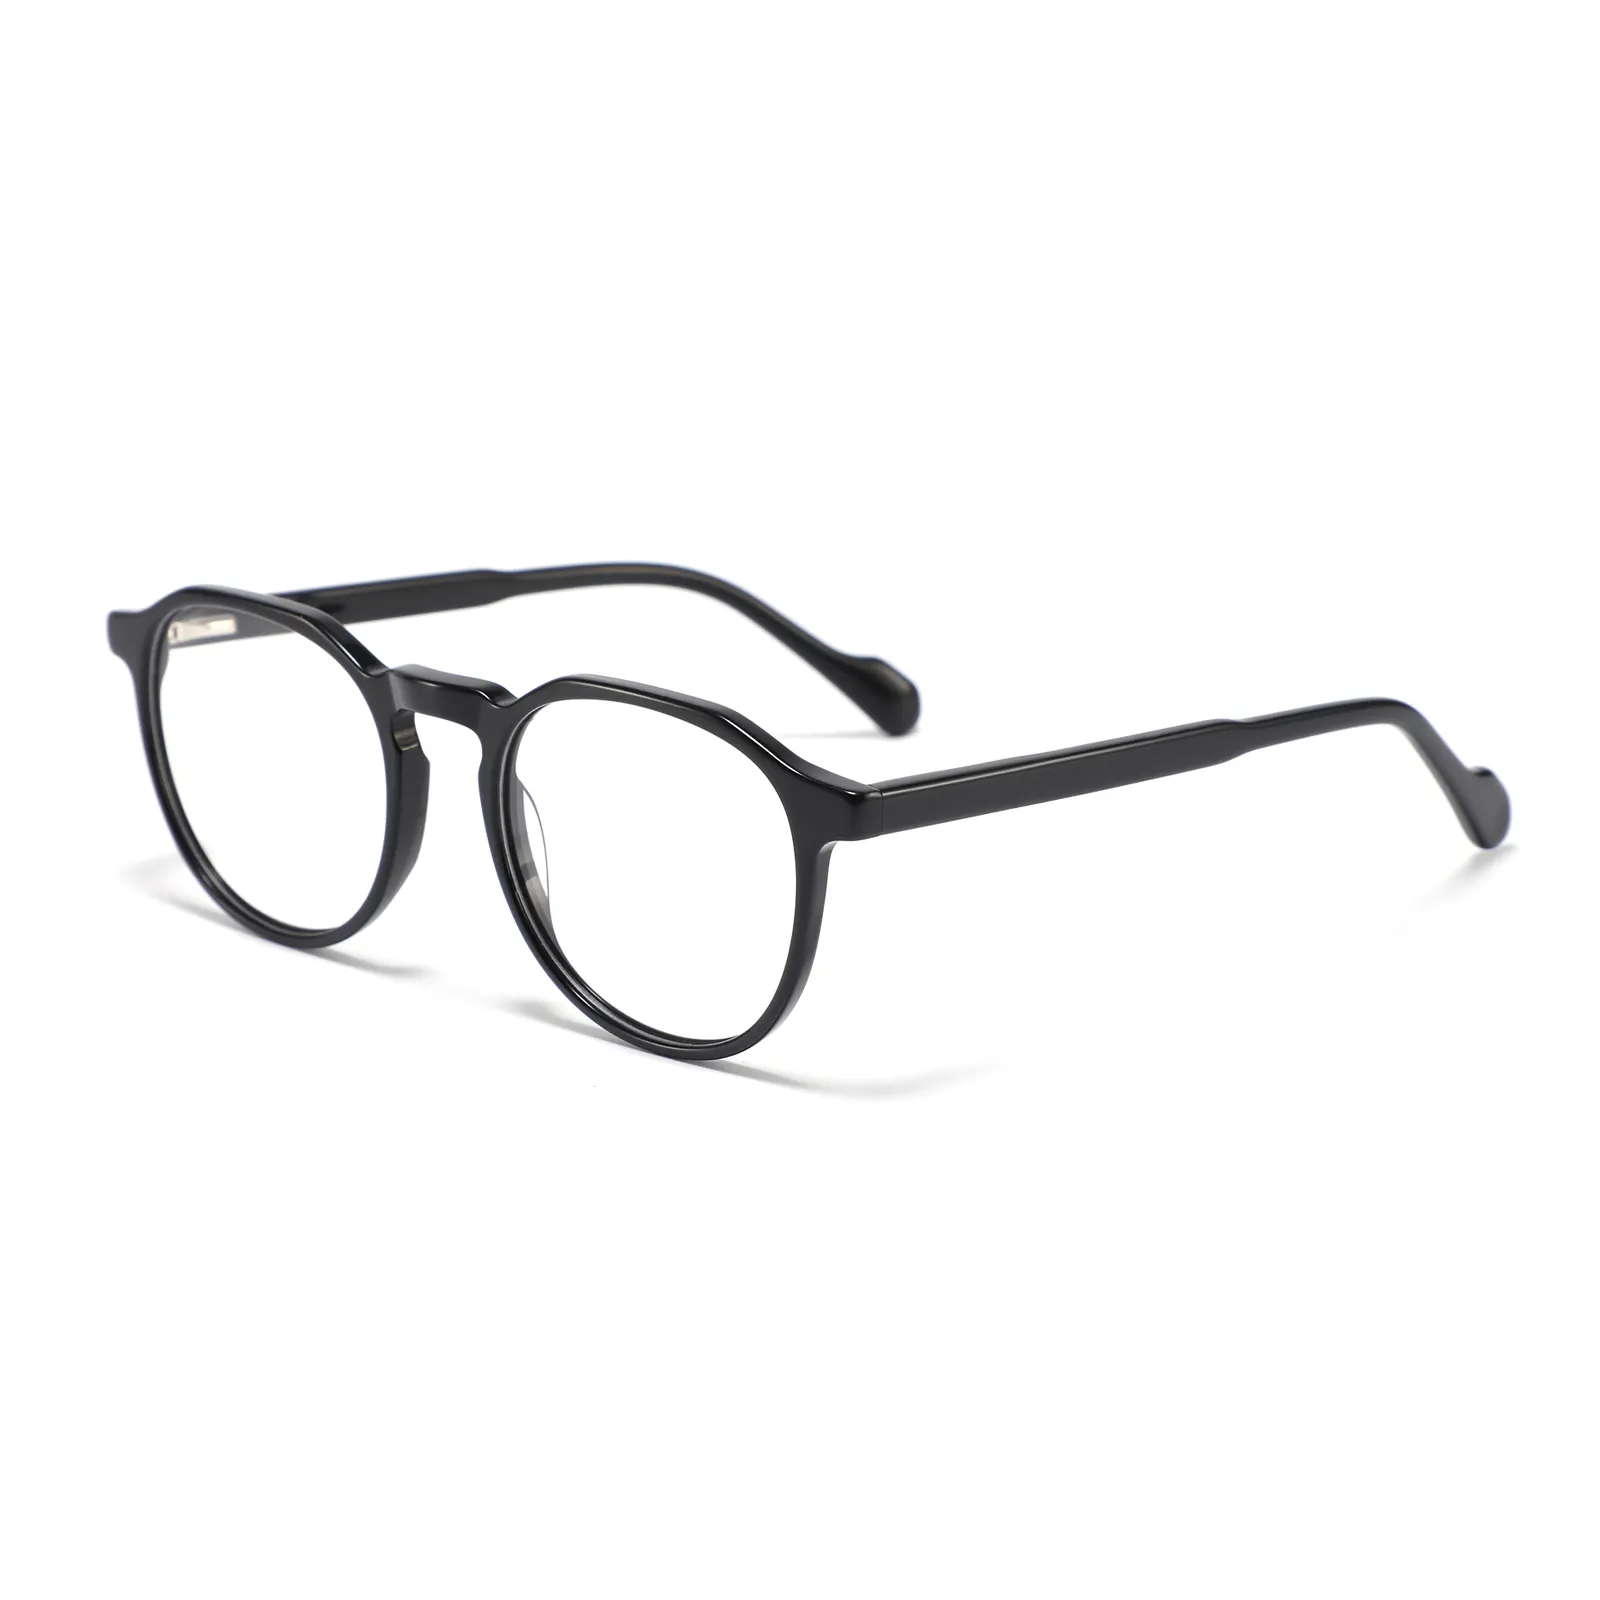 Moda mais recente modelo armações de óculos de acetato, óculos de grau óptico de alta qualidade